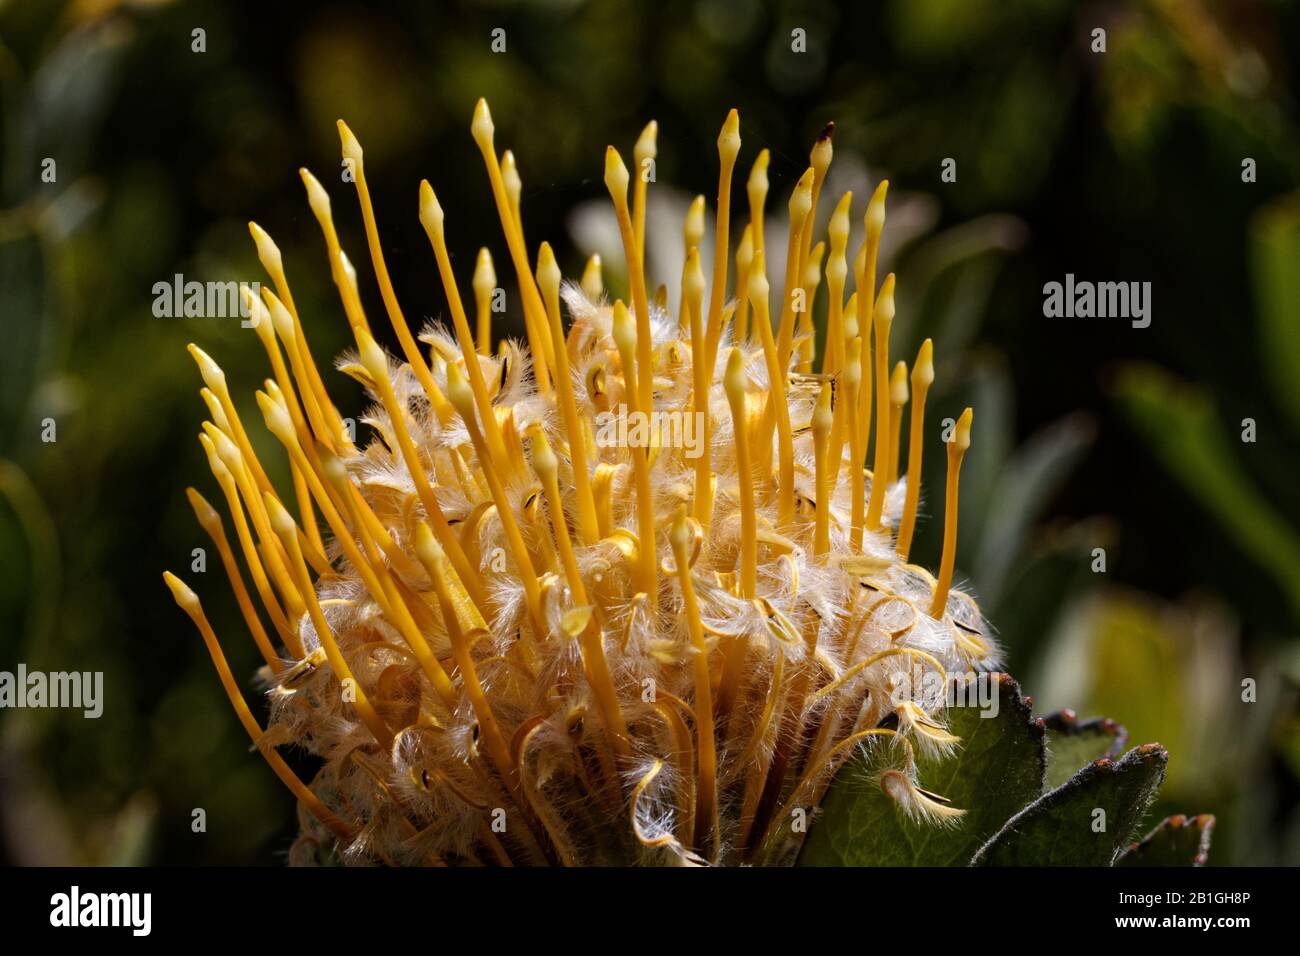 Leucospermum conocarpodendron ist die größte Art der Gattung, die fast baumartige Anteile von 5-6 m (16-20 ft) hoch erreicht. Stockfoto